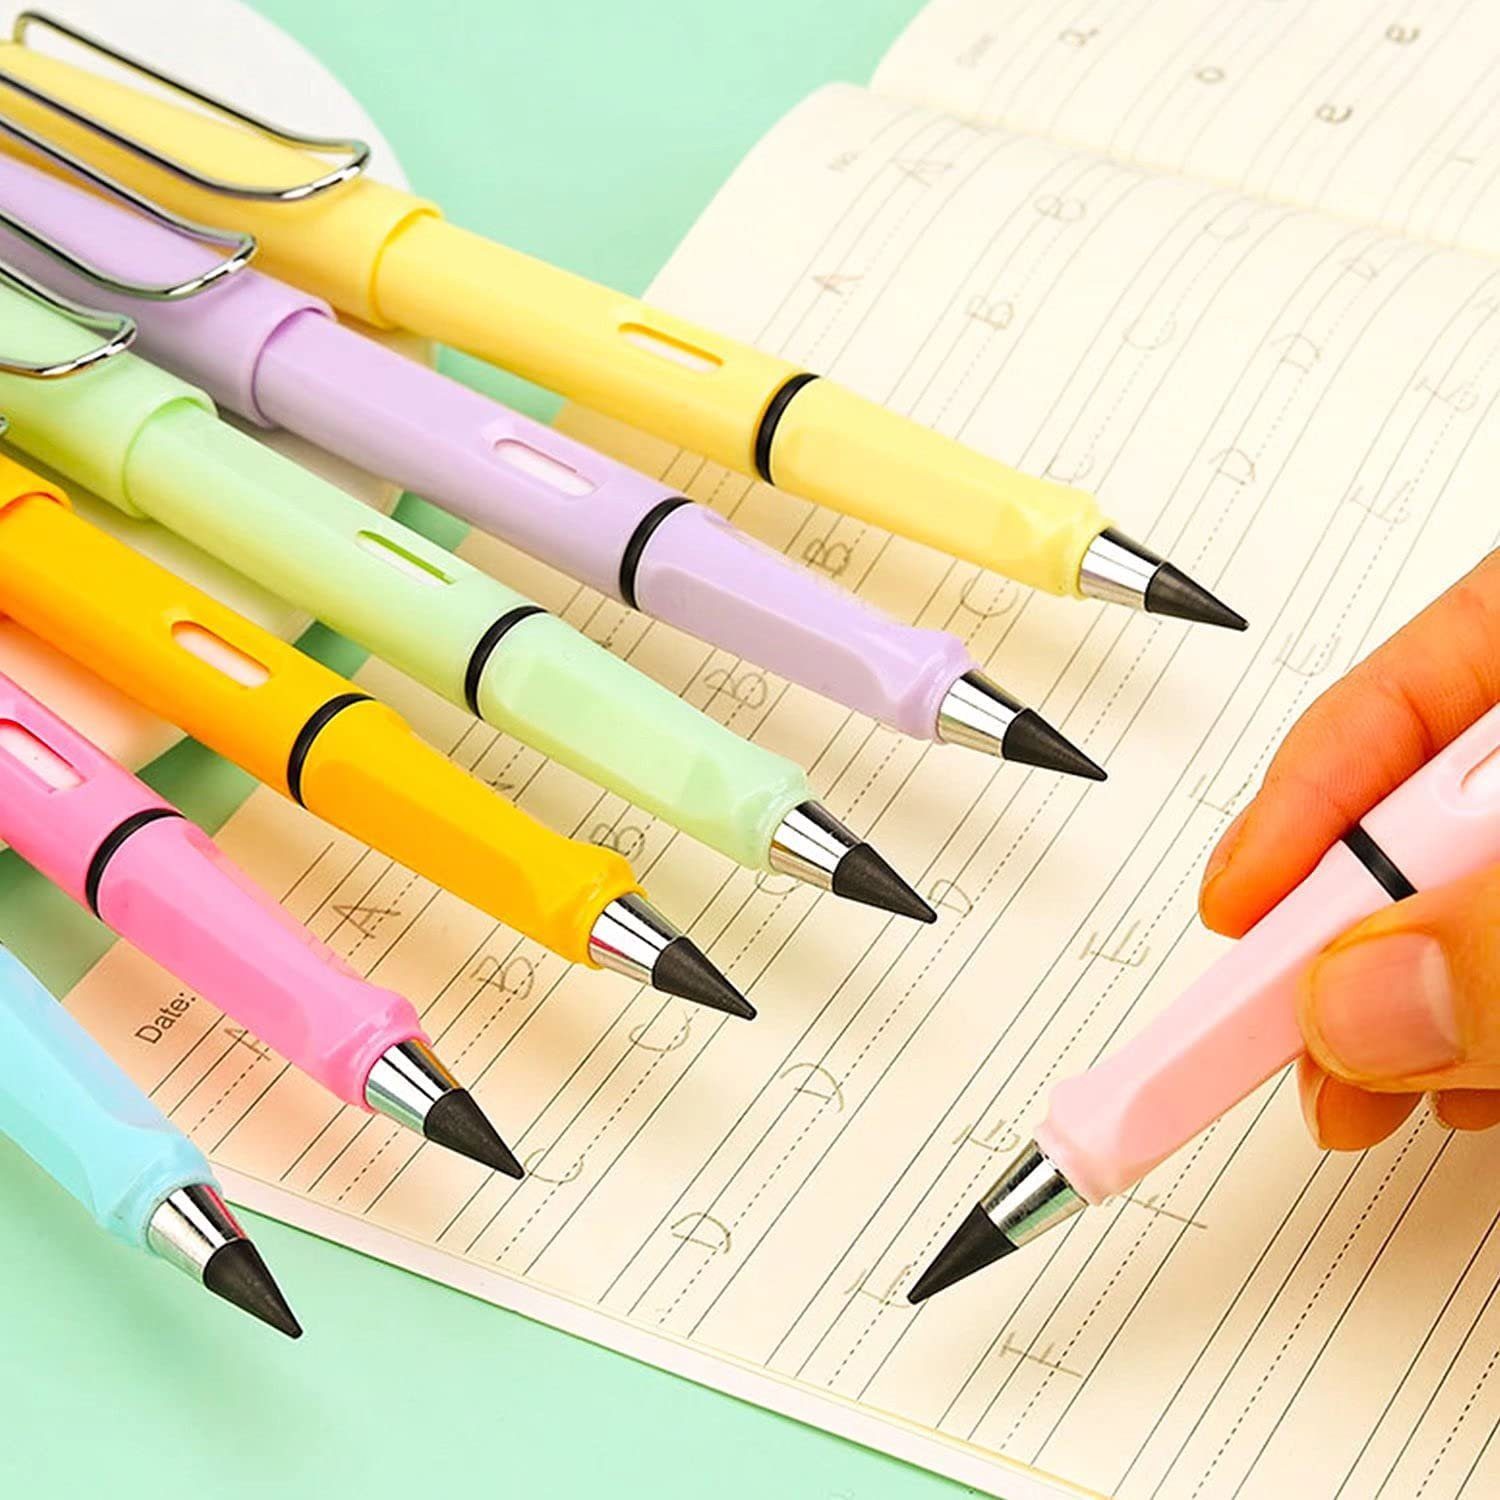 XDeer Bleistift Der neue gefragte Metall,wunderbarer und Aus Dieser Schreiben, Immerwährender Bleistift,Ewiger Papier Legierungsmetallmoleküle am Tintenschreiber für Bleistifte,Unendlicher (6-tlg), Farbe kann Bleistift D Spitze bleiben zersetzen schreiben. Zeichnen sich reibt,die wenn oder Schüler/Künstler Bleistift,Tintenlose auf ohne Bleistift,Tragbarer Bleistift,Wiederverwendbar Papieroberfläche die Anspitzen der zum Tinte bleistift